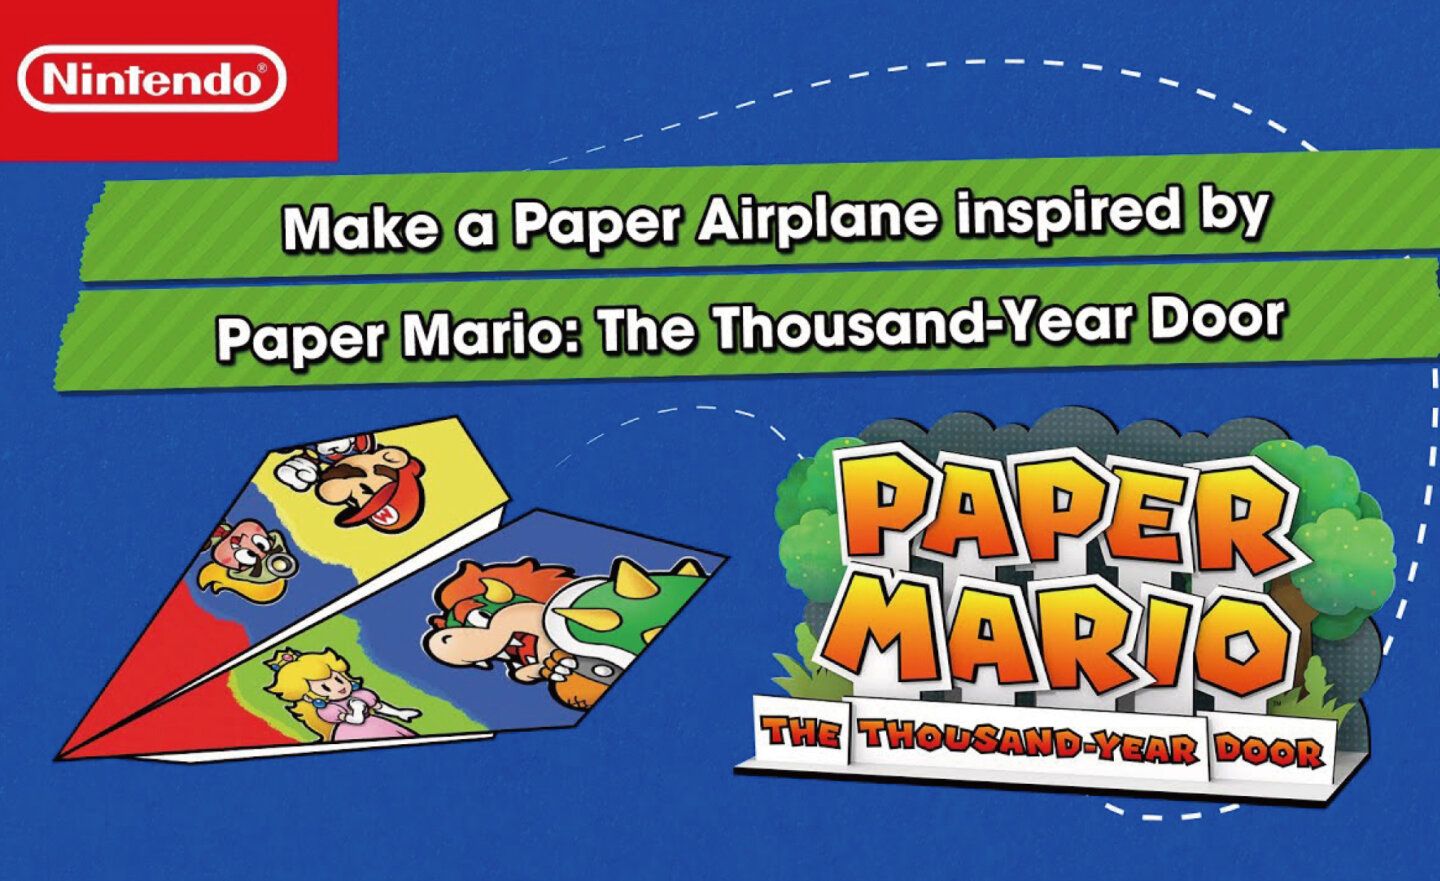 【免費】任天堂 × 紙飛機先生開發《紙片瑪利歐RPG》紙飛機 紙模型，邀玩家一起翱翔天際